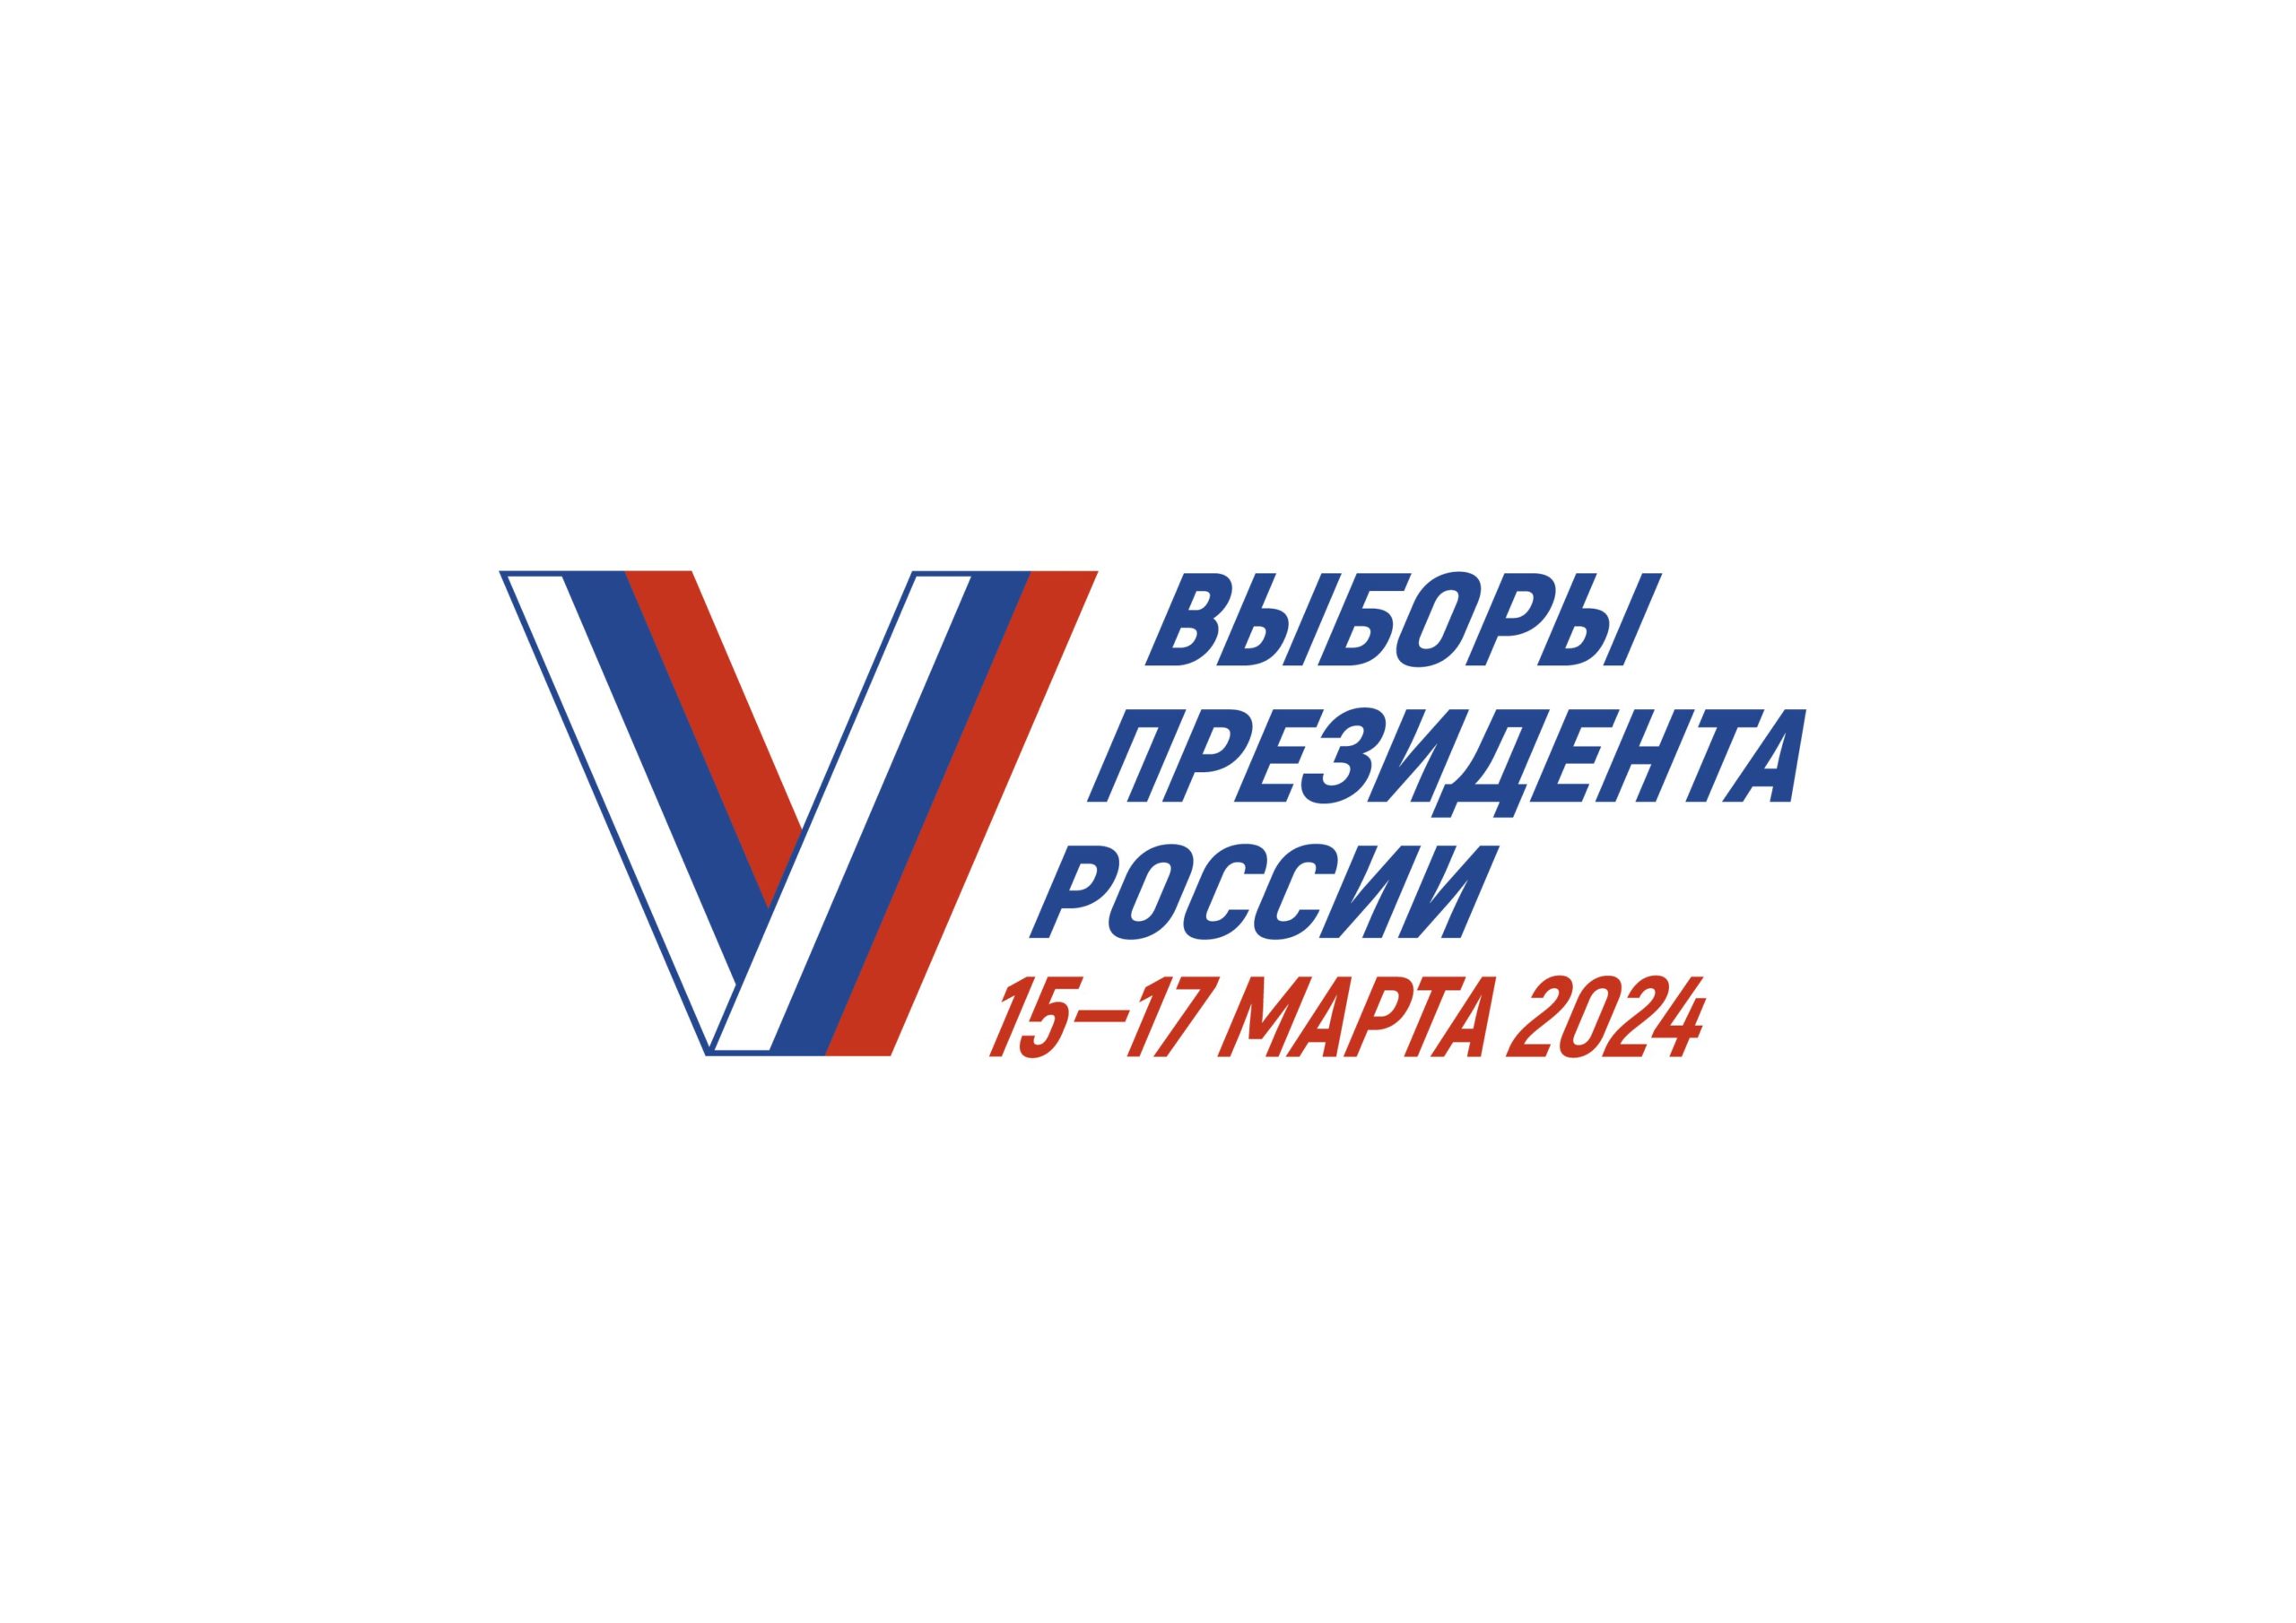 Выборы Президента Российской Федерации пройдут с 15 по 17 марта 2024 года.